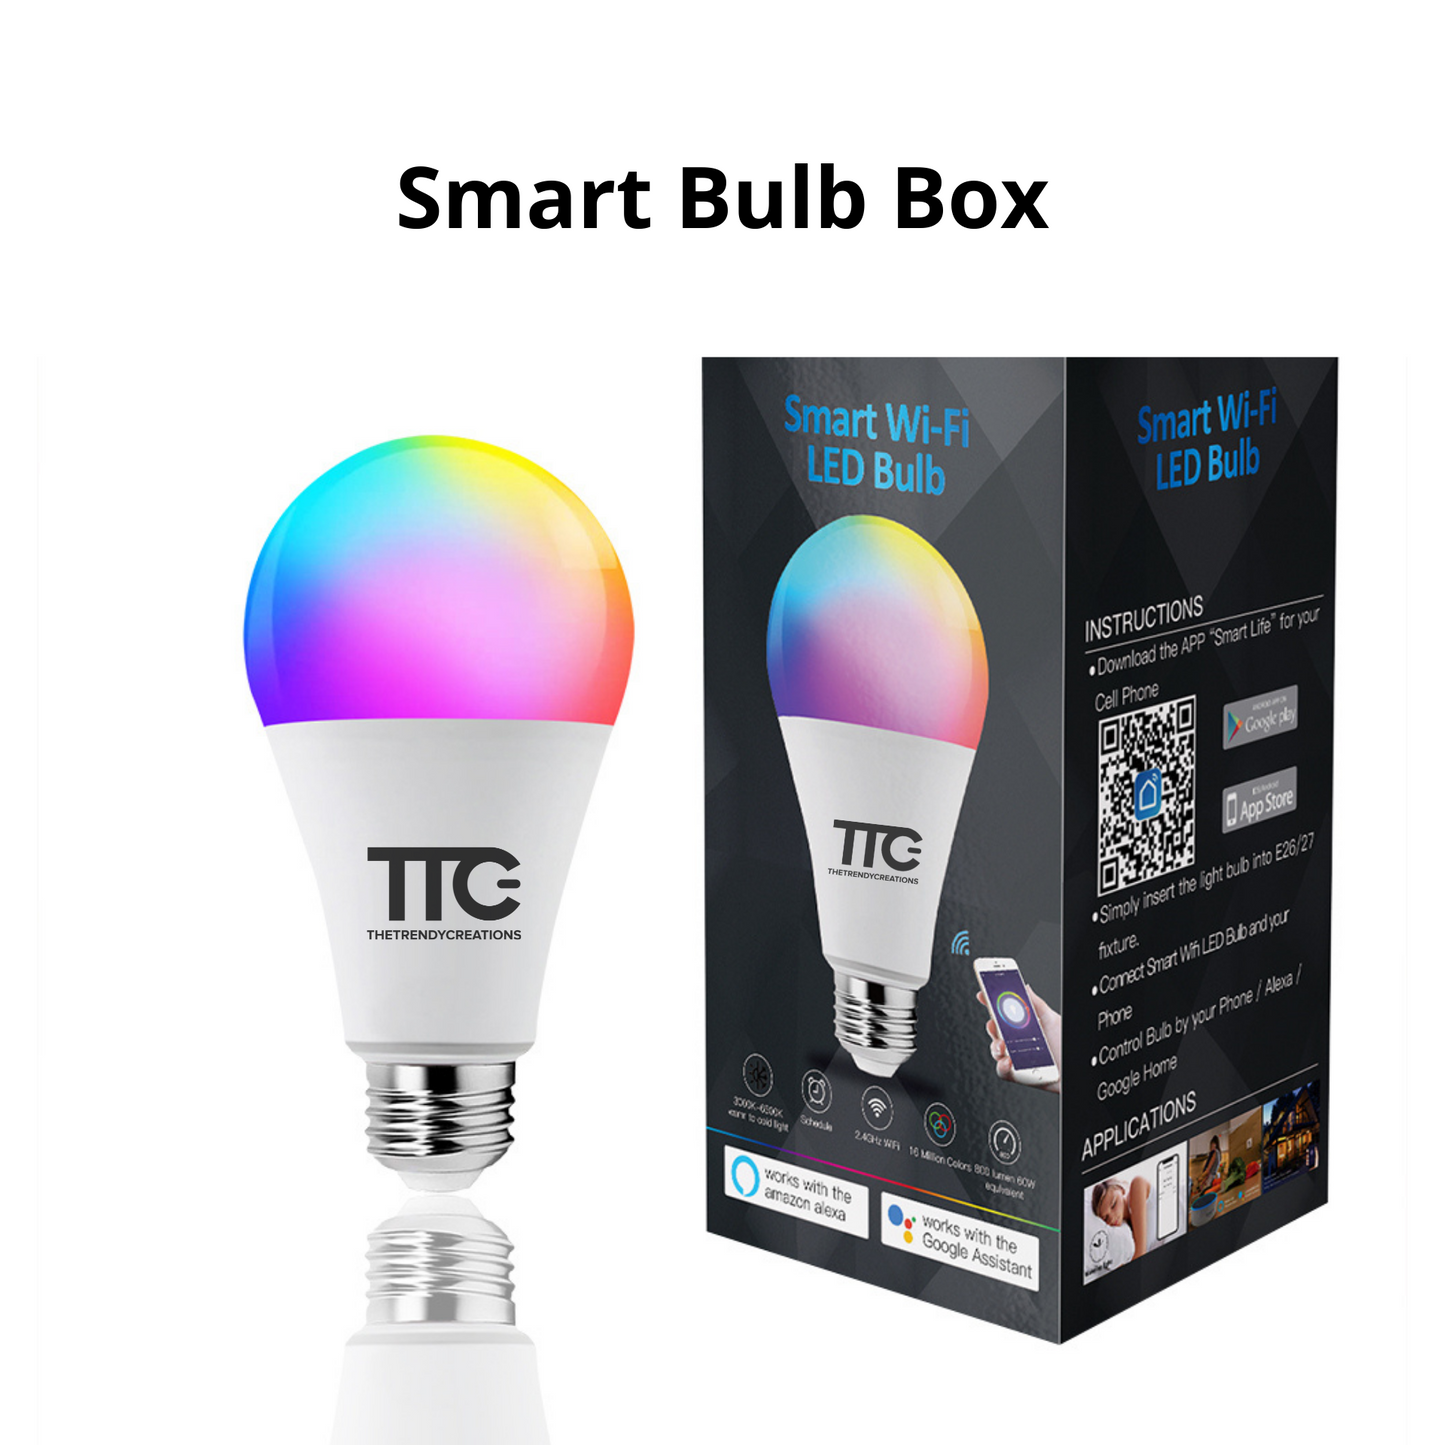 Wi-Fi Smart Bulb